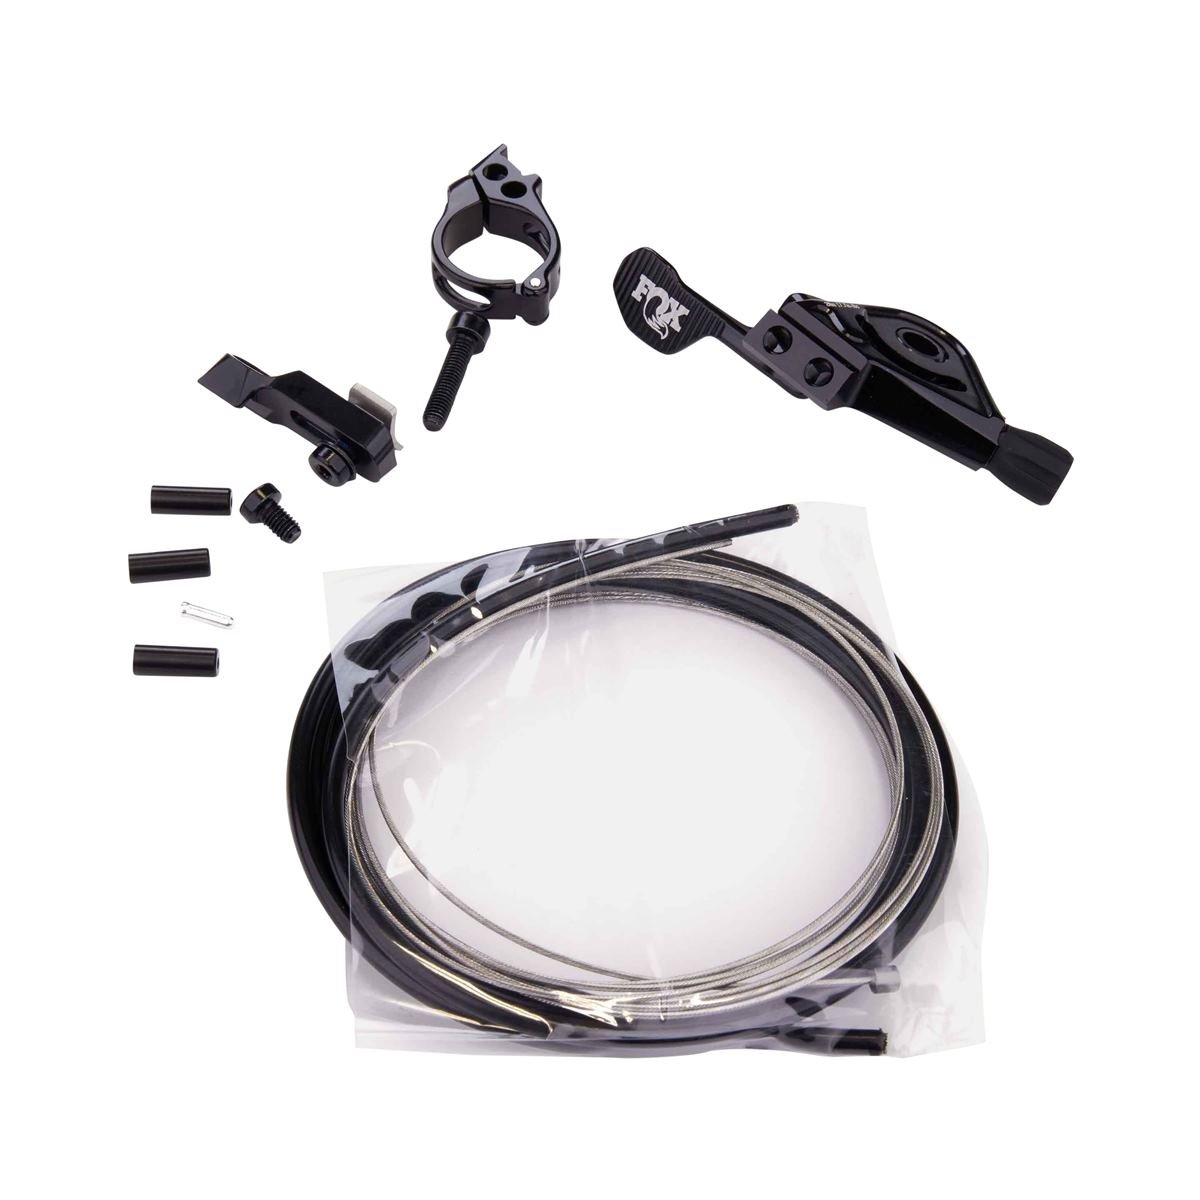 Fox Racing Shox Remote Lever Transfer clamp 22.2 mm, Matchmaker, I-Spec EV